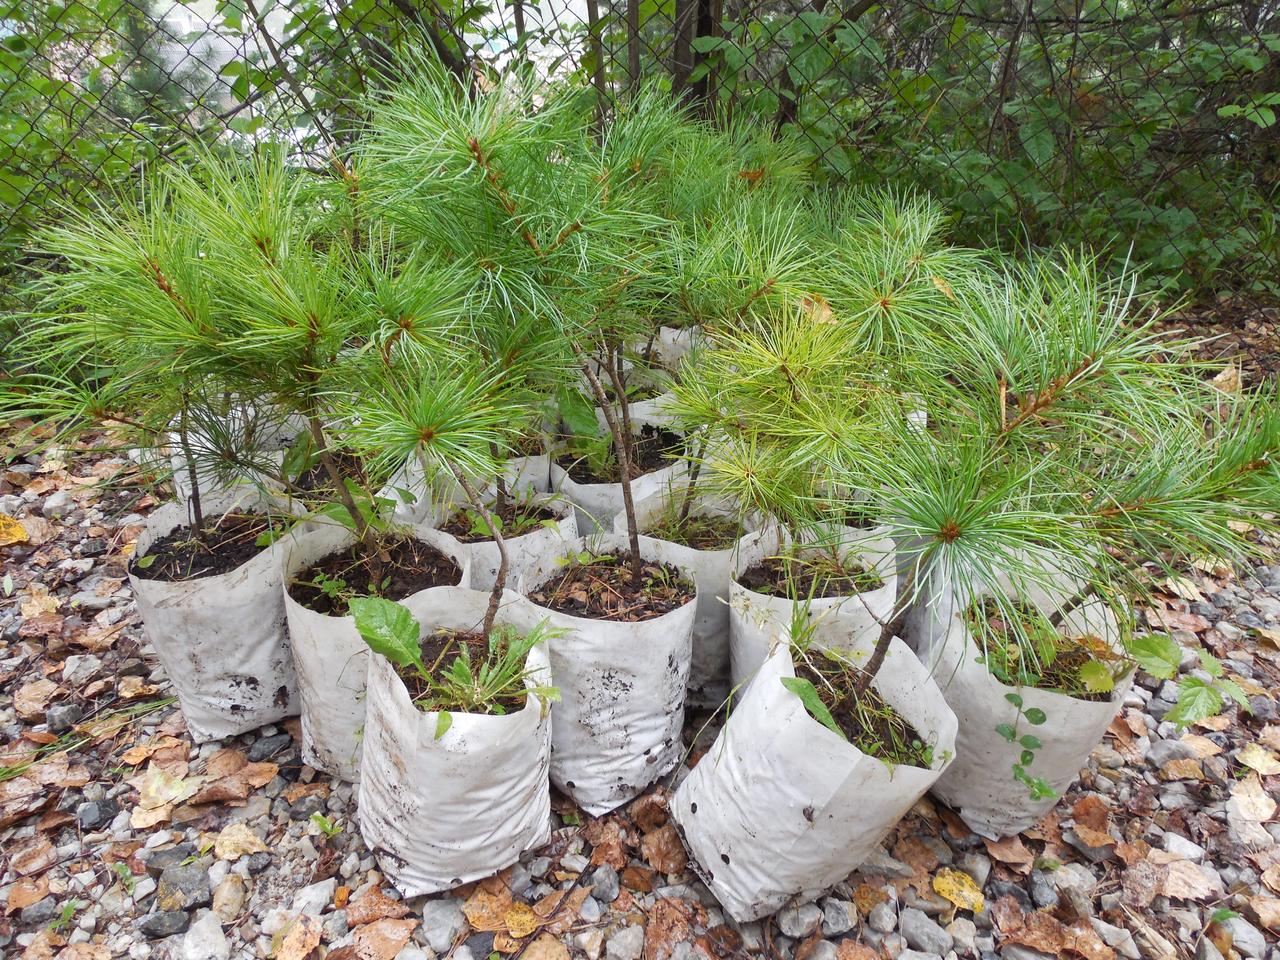  Пролонгированное влияние стимуляторов на рост трехлетних сеянцев кедра корейского (Pinus koraiensis Siebold et Zucc.)